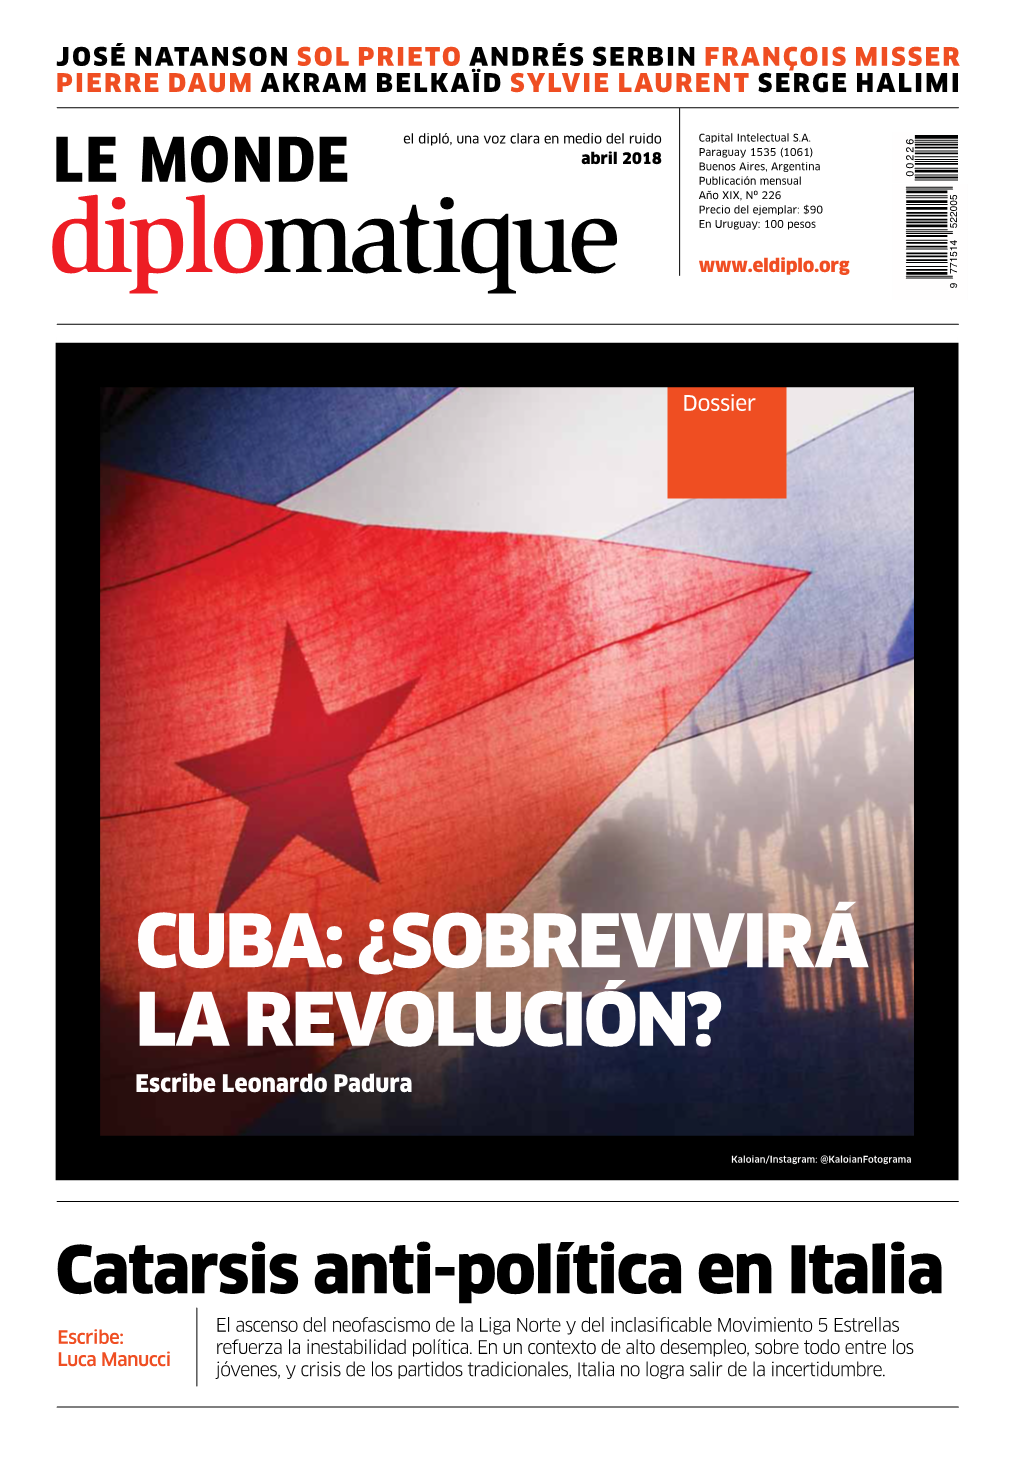 CUBA: ¿Sobrevivirá La Revolución? Escribe Leonardo Padura